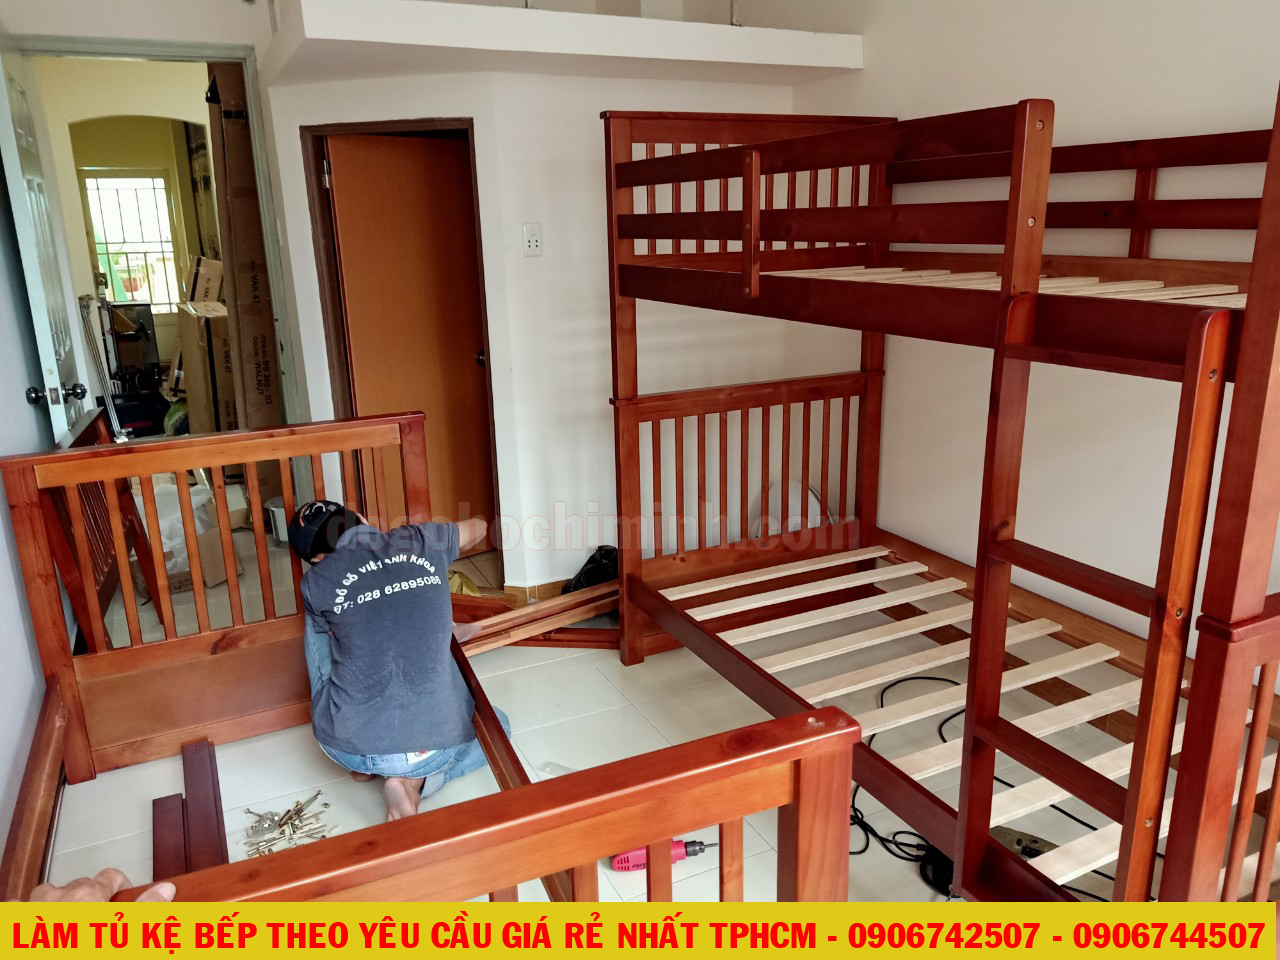 Thi công giường 2 tầng nhà trọ sinh viên tại N Sơn Gò Vấp - TPHCM 2020